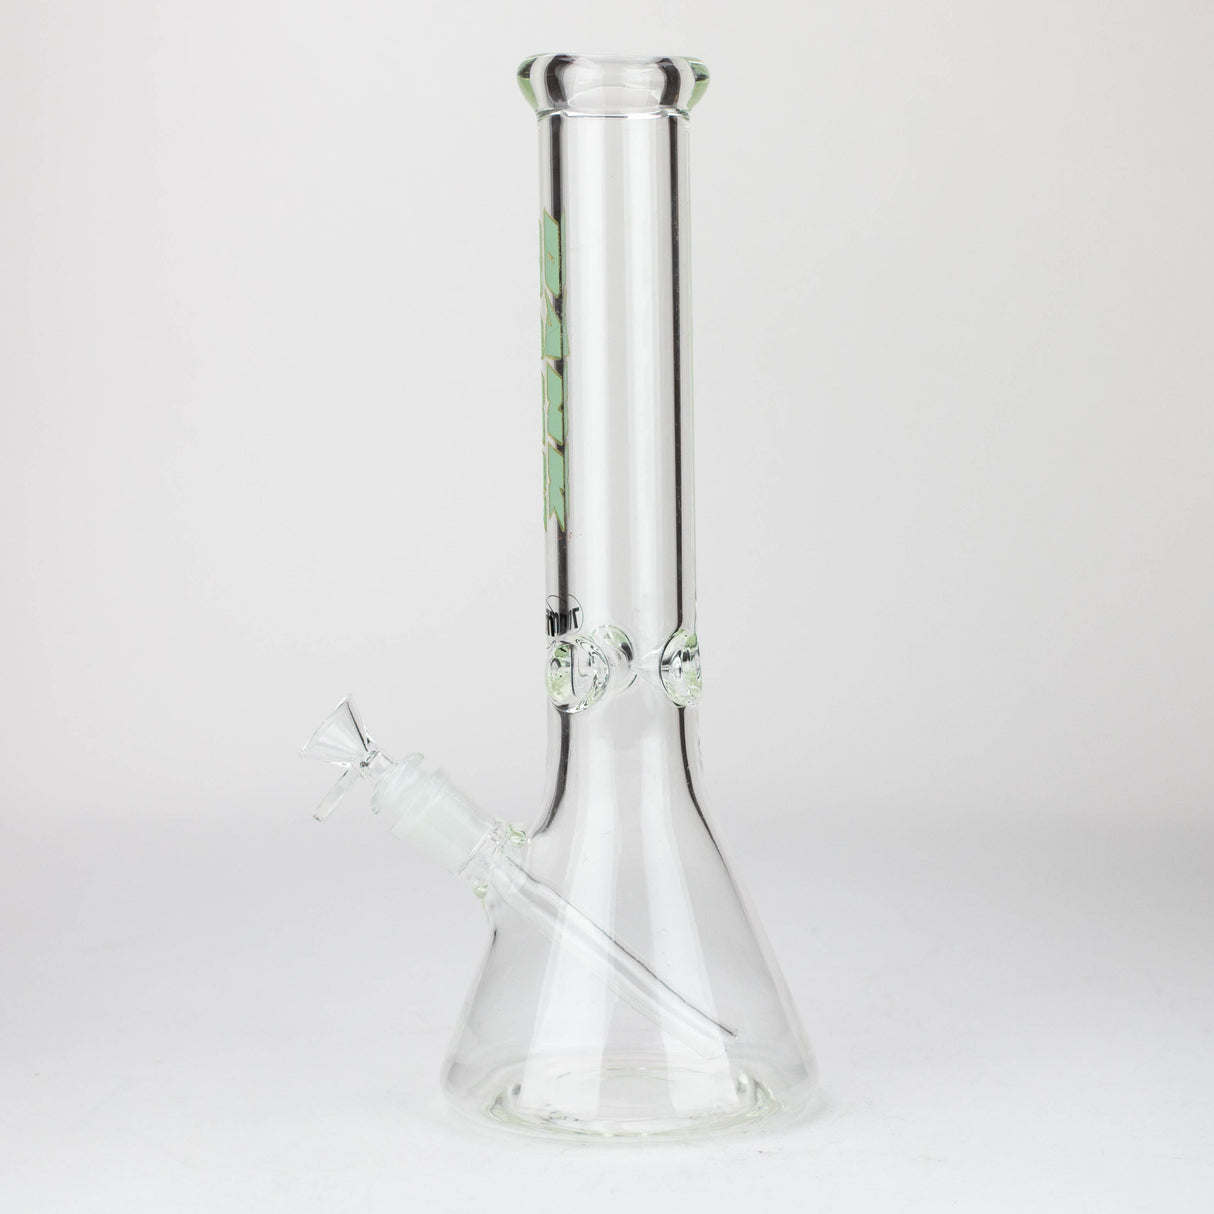 DANK | 14" 7mm Beaker glass Bong